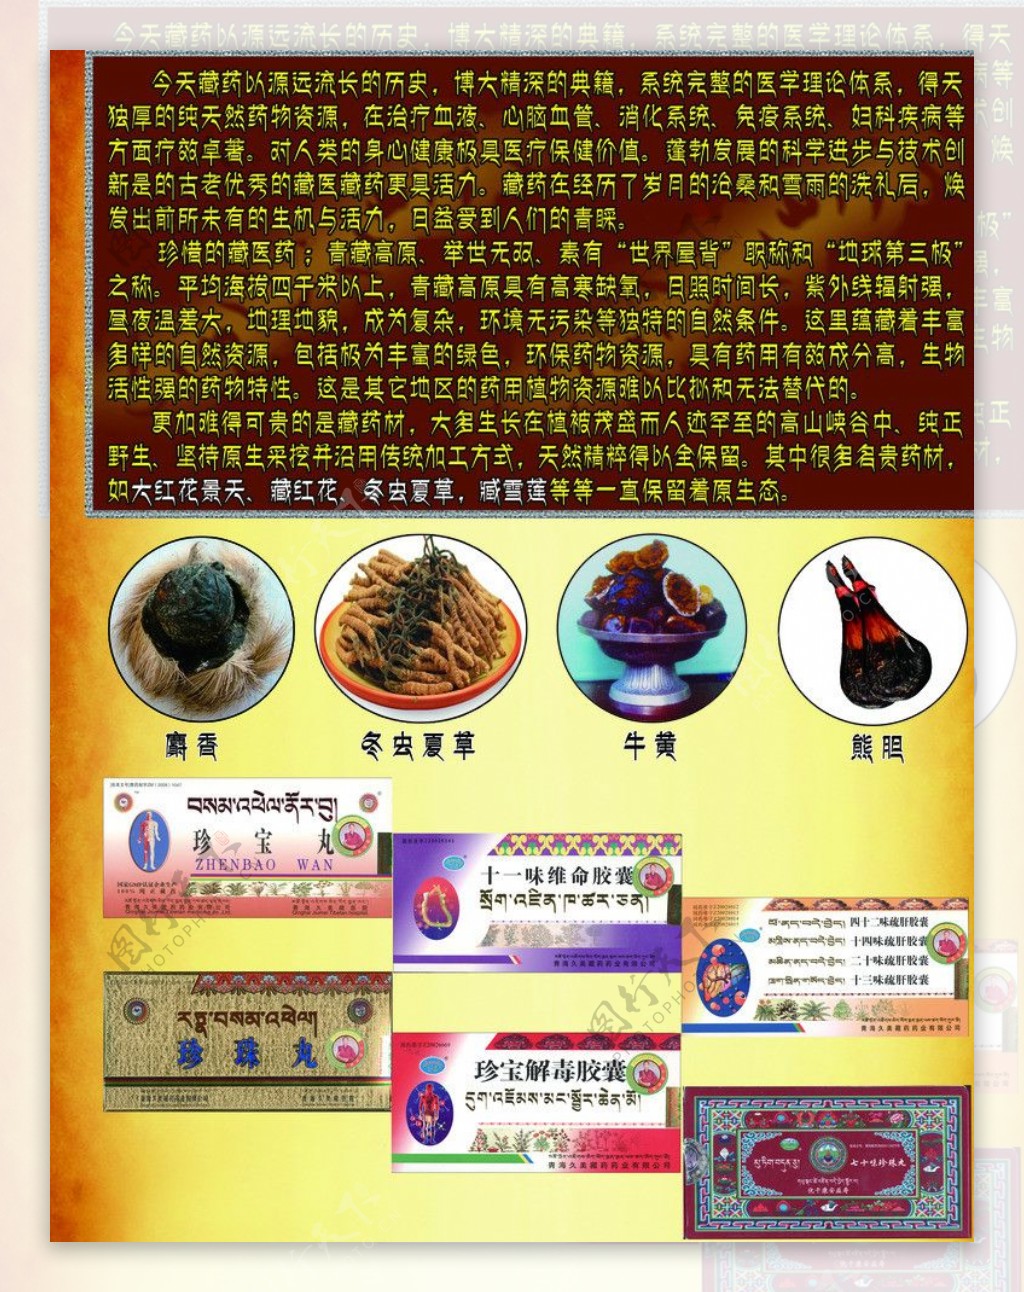 参观藏药展览馆，体验长达千年的藏药历史，是中华民族的瑰宝 - 知乎